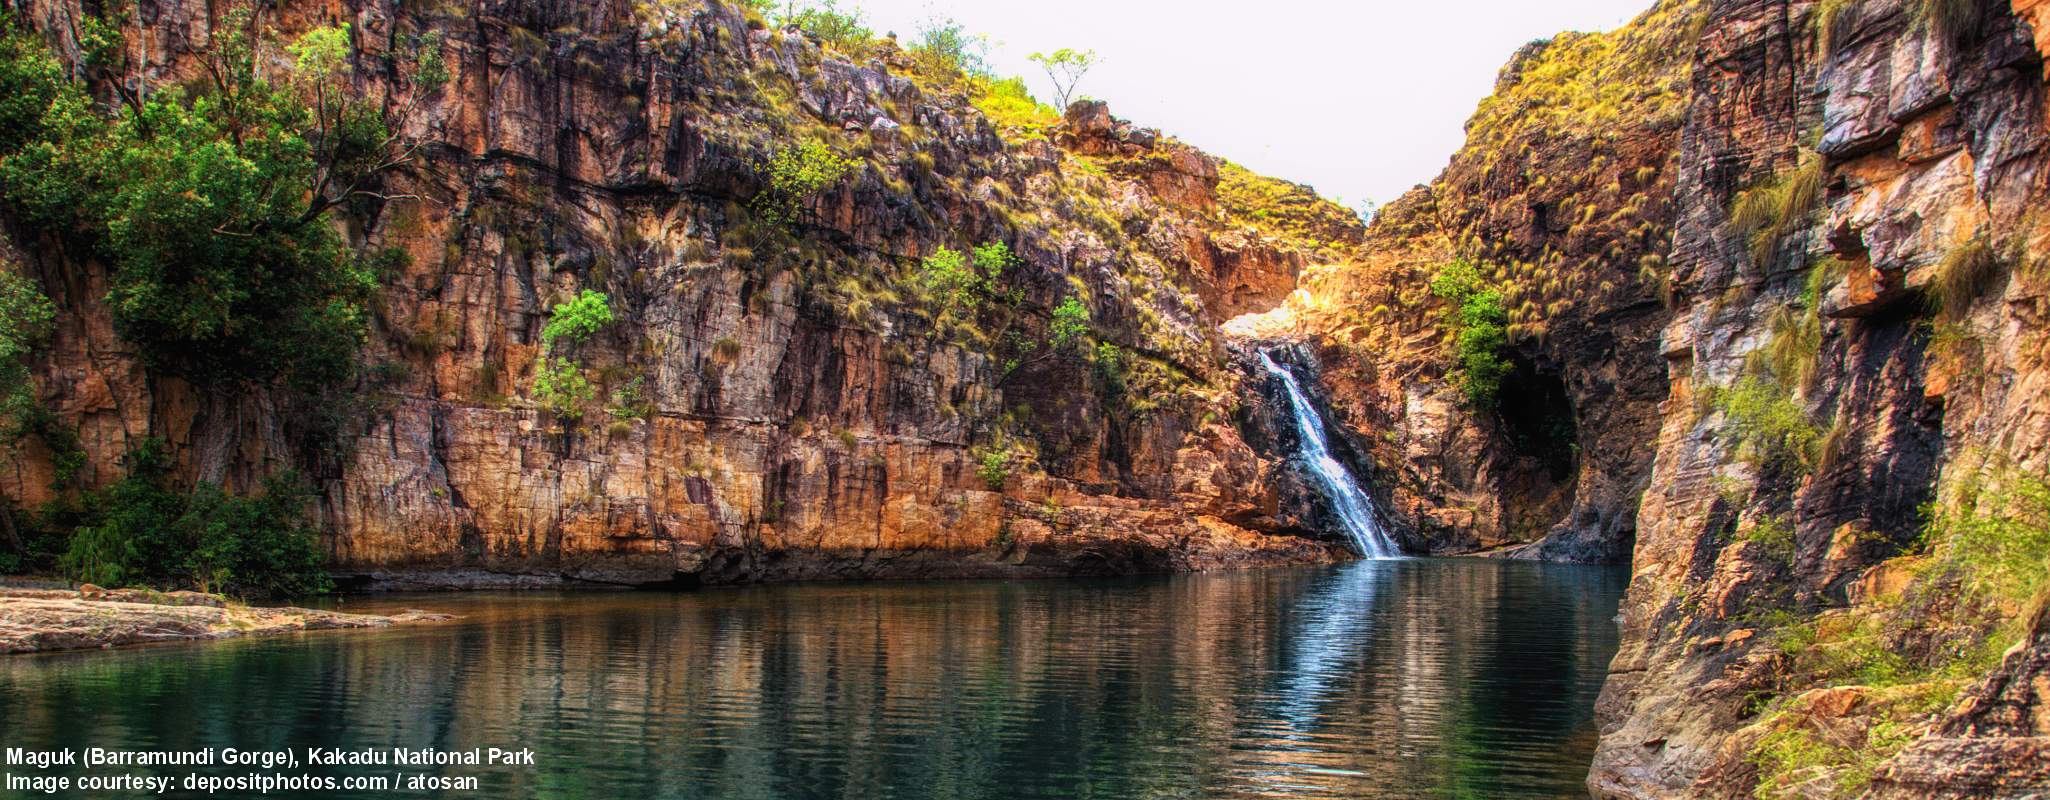 Kakadu National Park image